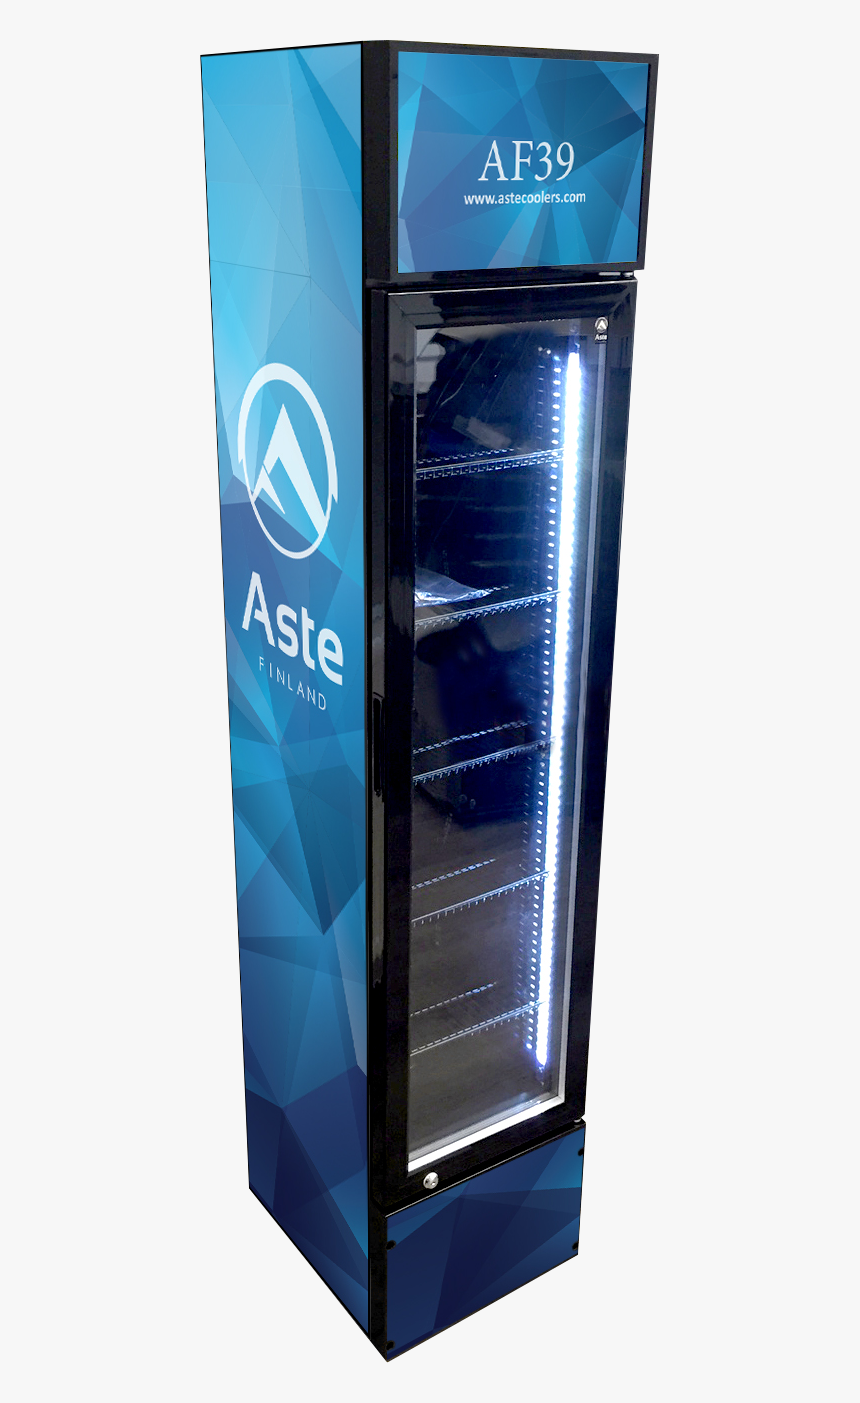 Aste Af39 Slim Display Cooler - Server, HD Png Download, Free Download